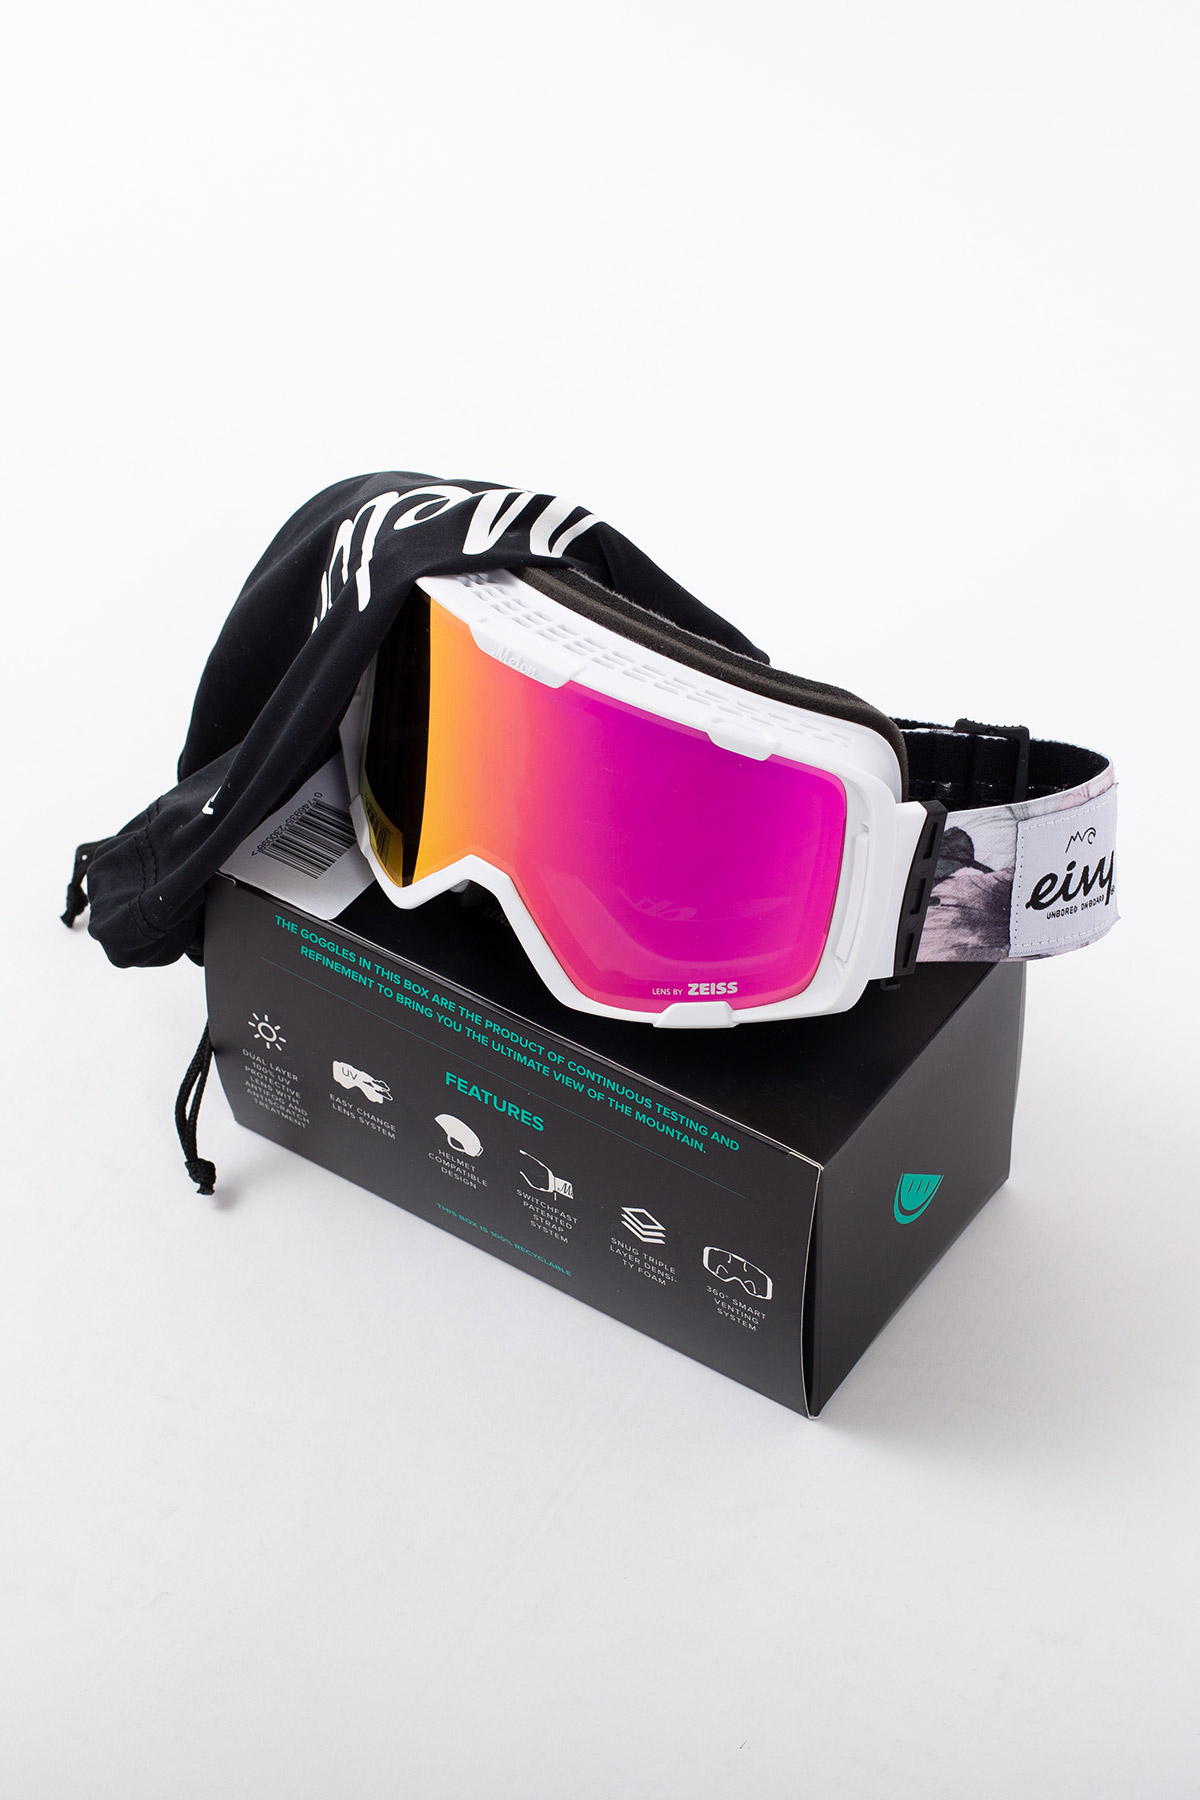 Goggles | Eivy x Melon Optics - Bloom